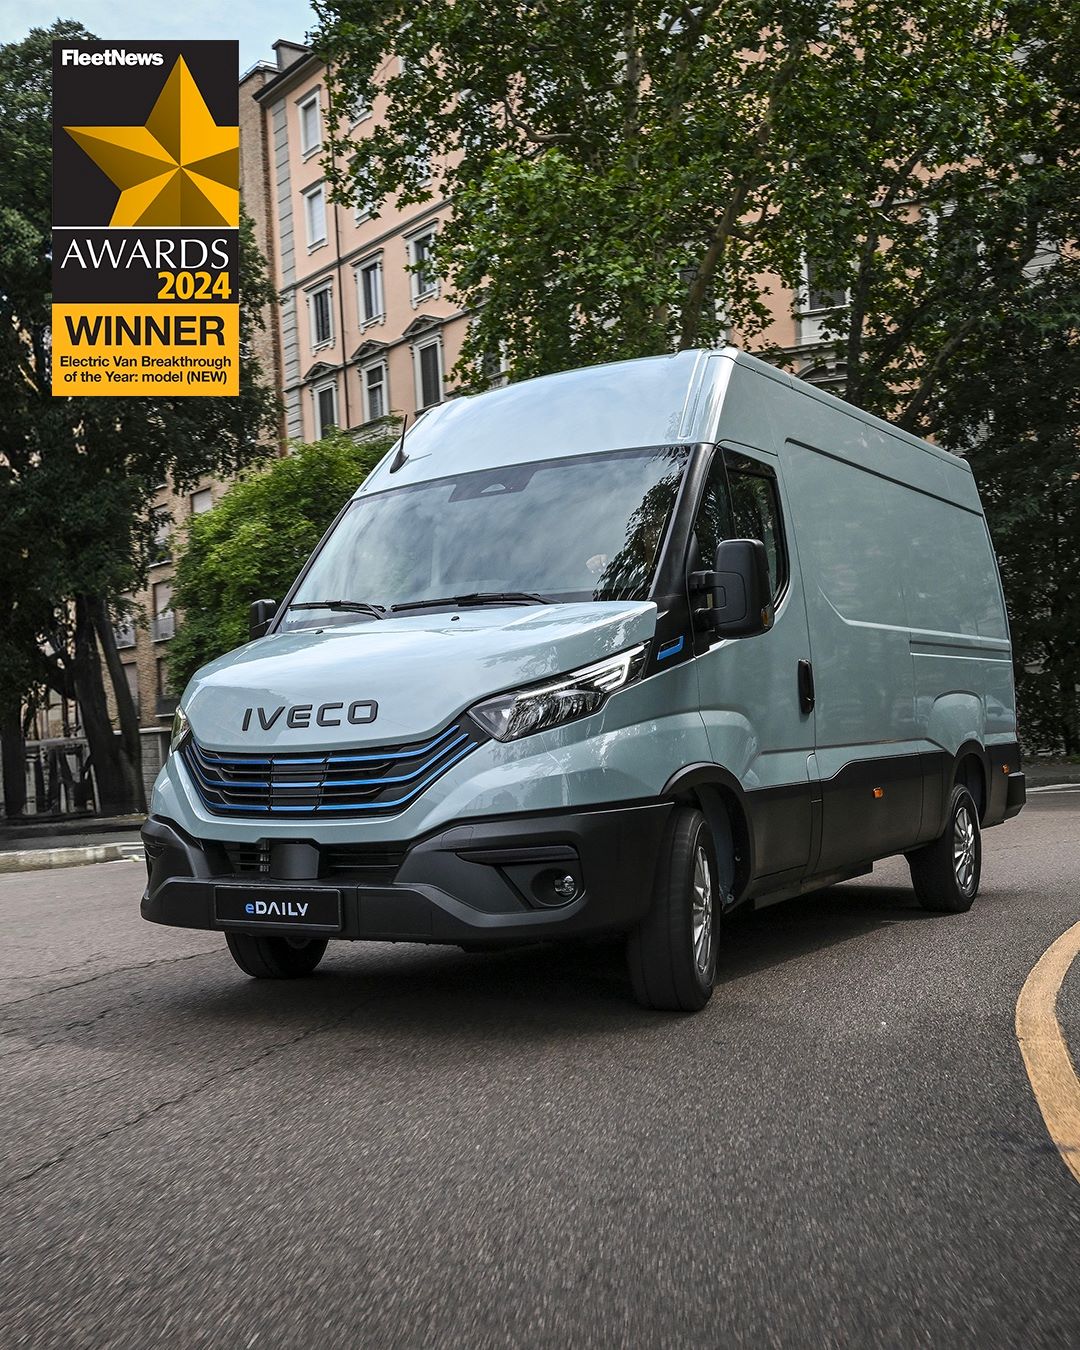 IVECO eDaily gana el premio al "Vehículo comercial eléctrico"